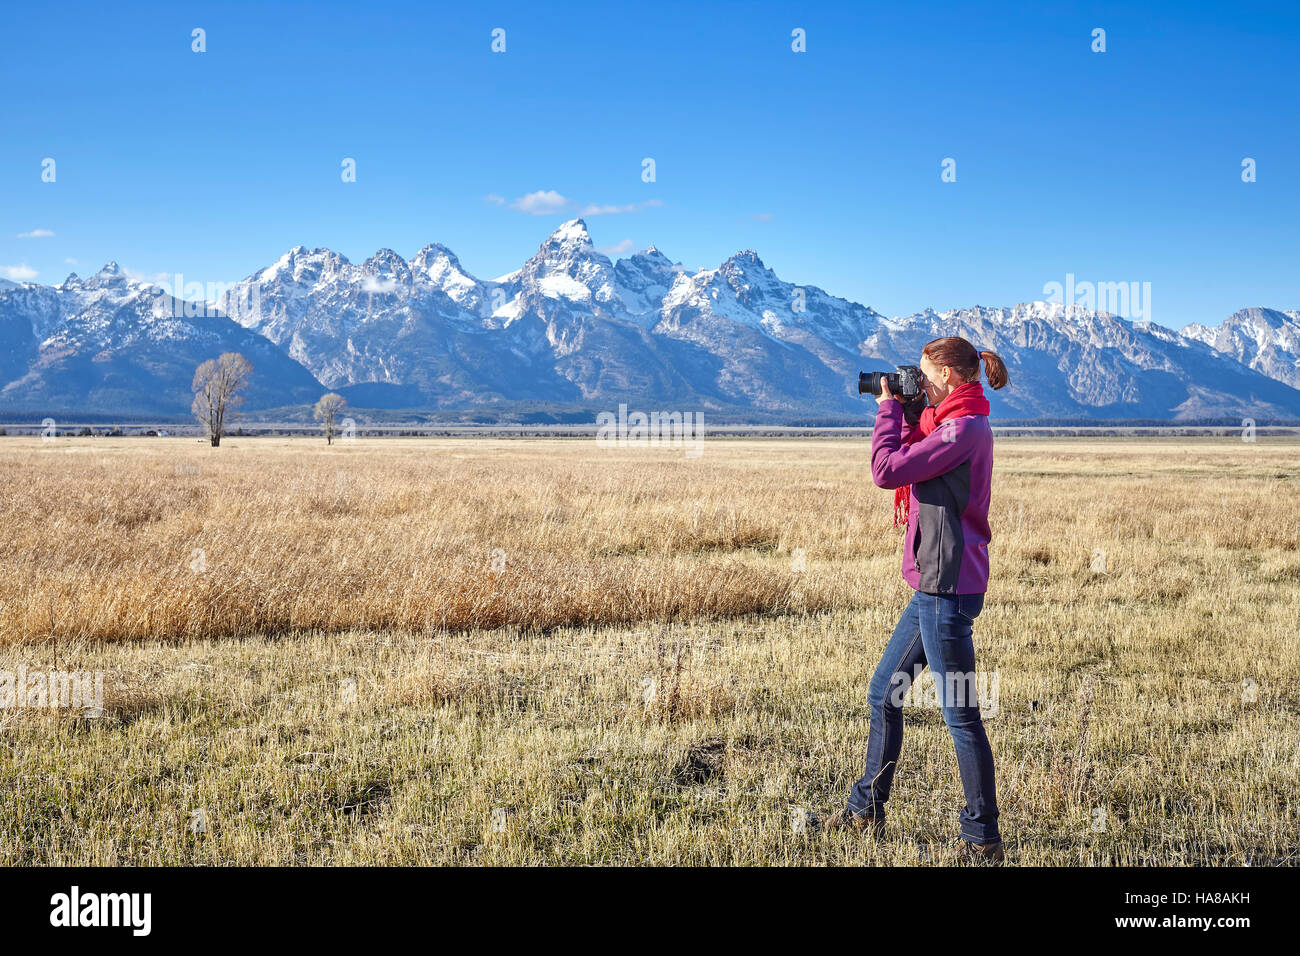 Montare femmina escursionista scattare foto con la fotocamera reflex digitale nel Parco Nazionale di Grand Teton, Wyoming negli Stati Uniti. Foto Stock